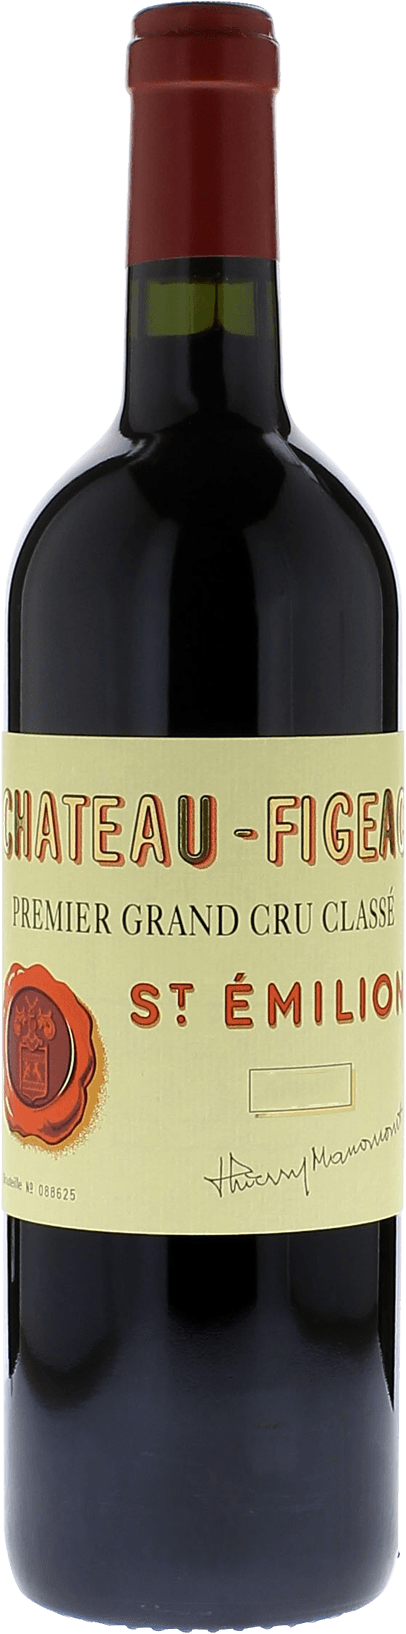 Figeac 2015 1er Grand cru class Saint-Emilion, Bordeaux rouge